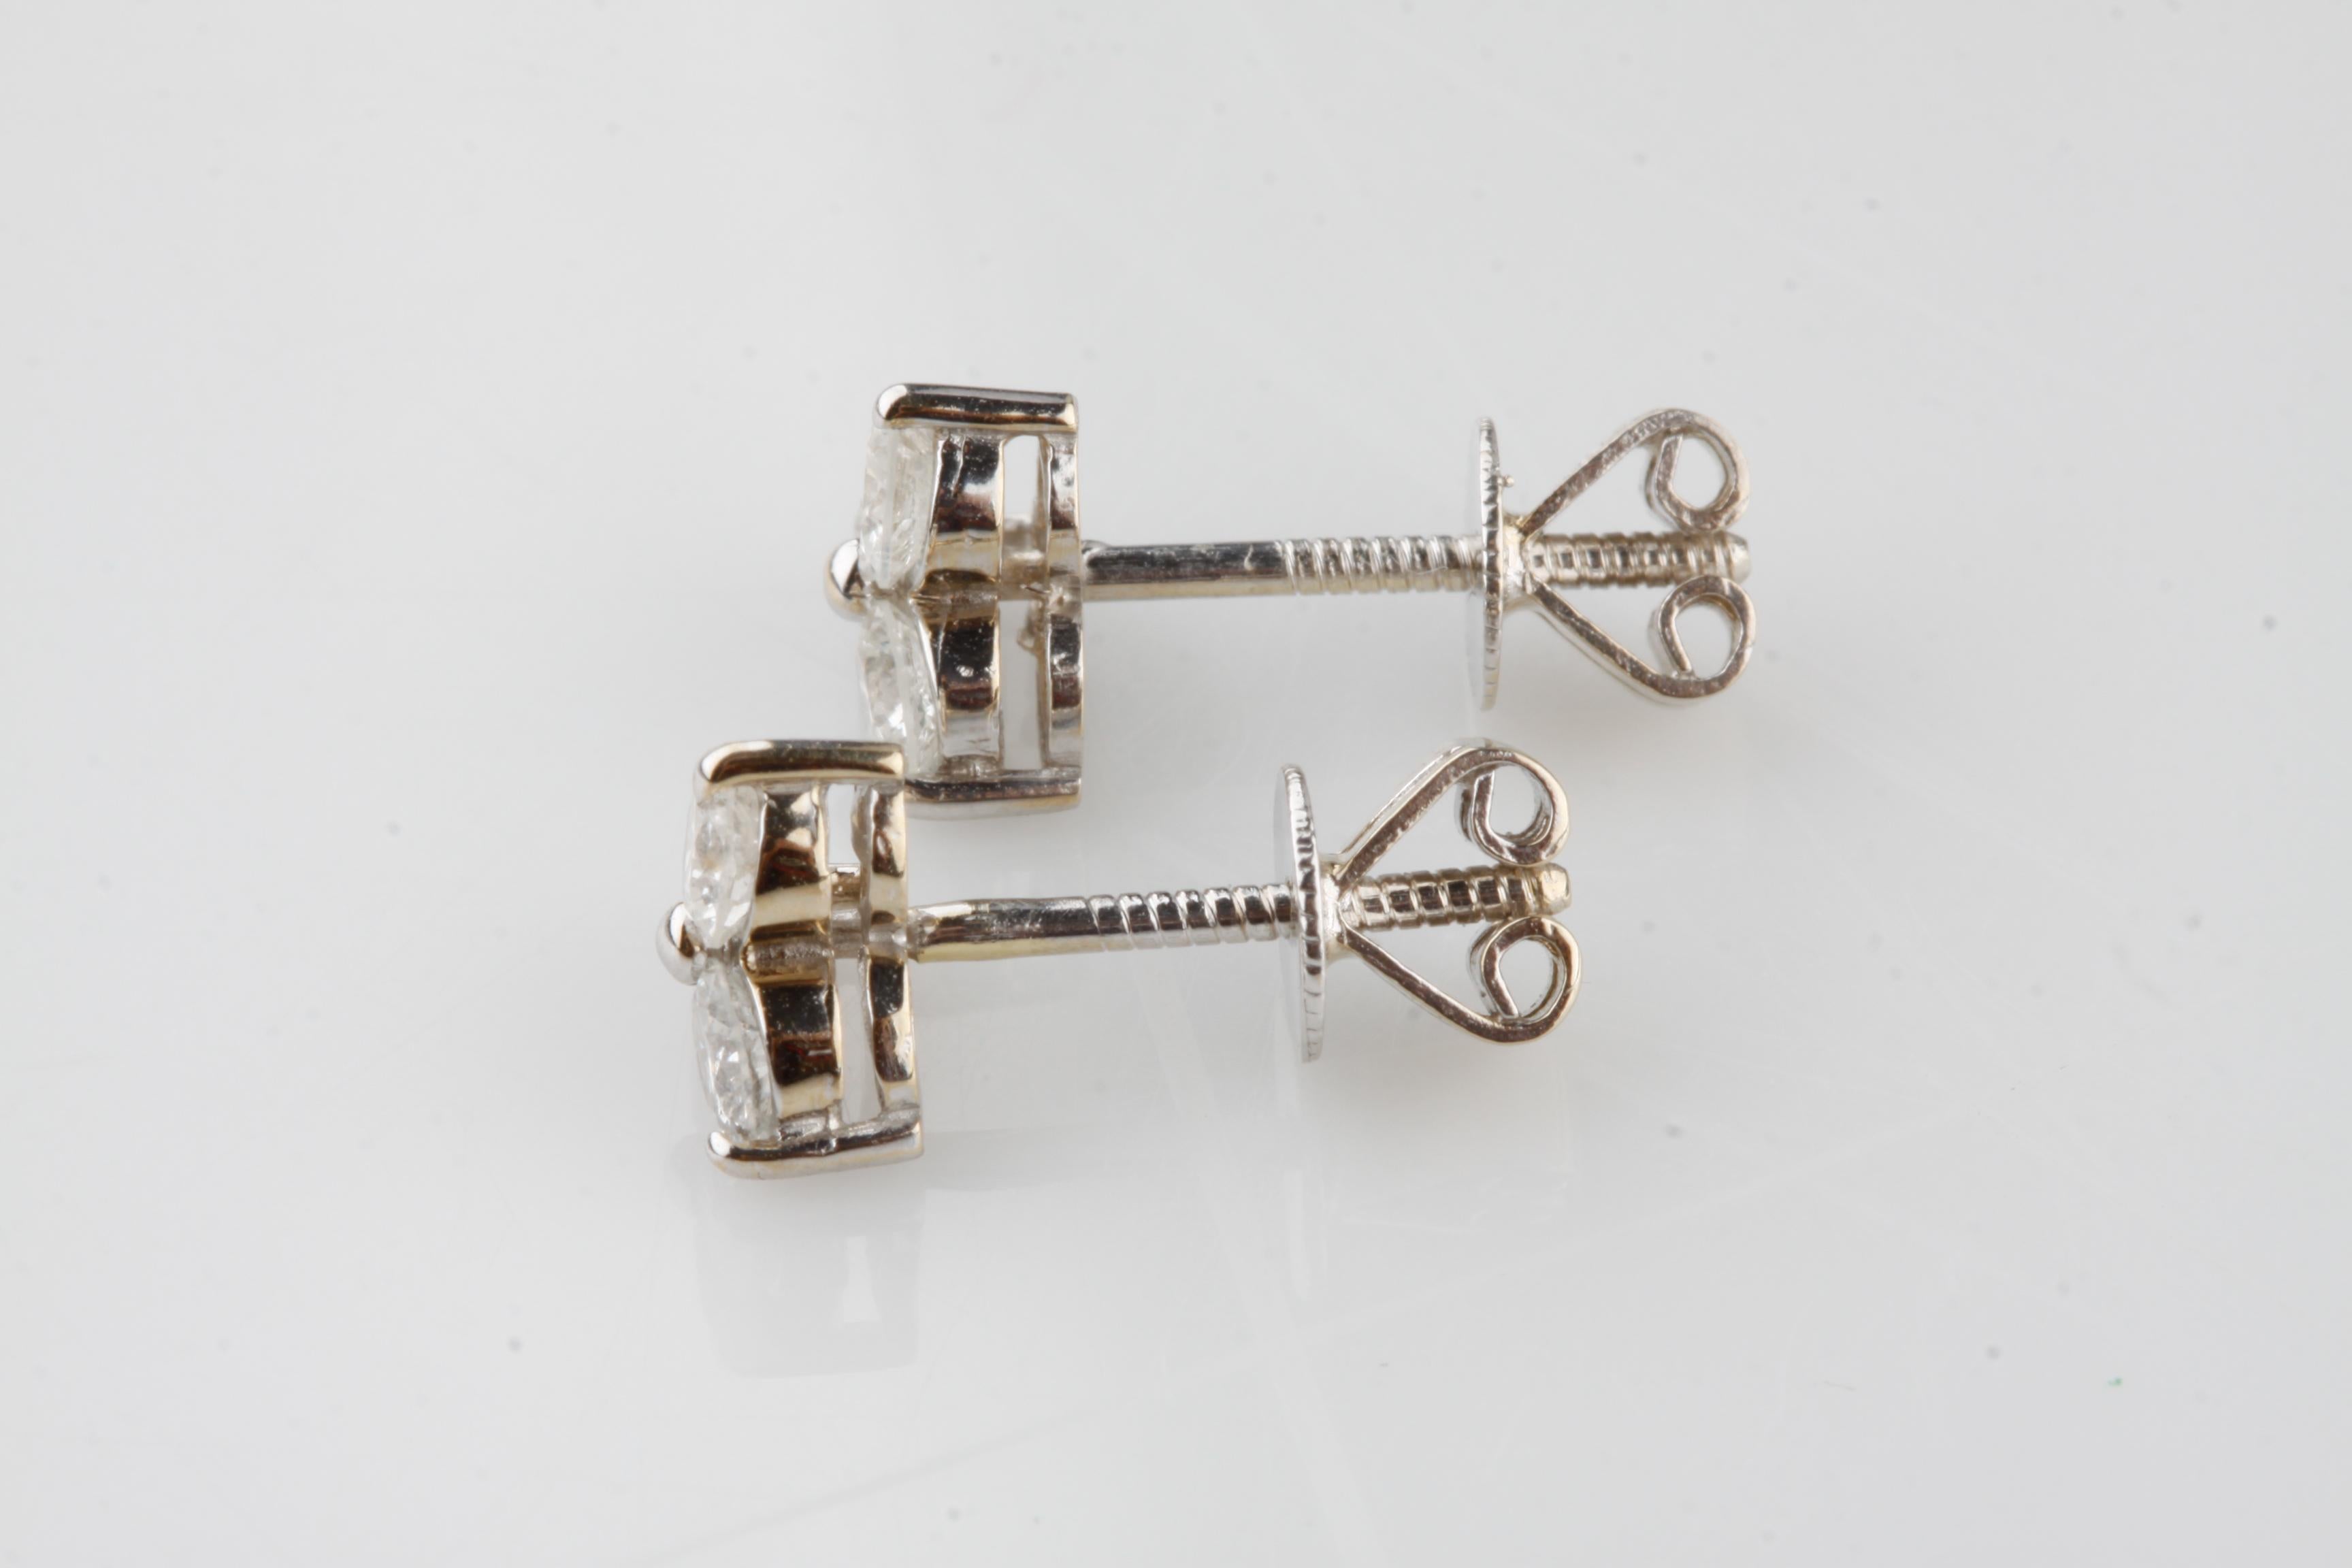 Ein Paar elektronisch getestet 14KT Weißgold Damen gegossen & montiert Diamant-Cluster-Ohrringe mit Schraube zurück.
Zustand ist gut
Damen 14KT Weißgold Diamant-Cluster-Ohrringe
Jeder Ohrring besteht aus einem Cluster aus drei